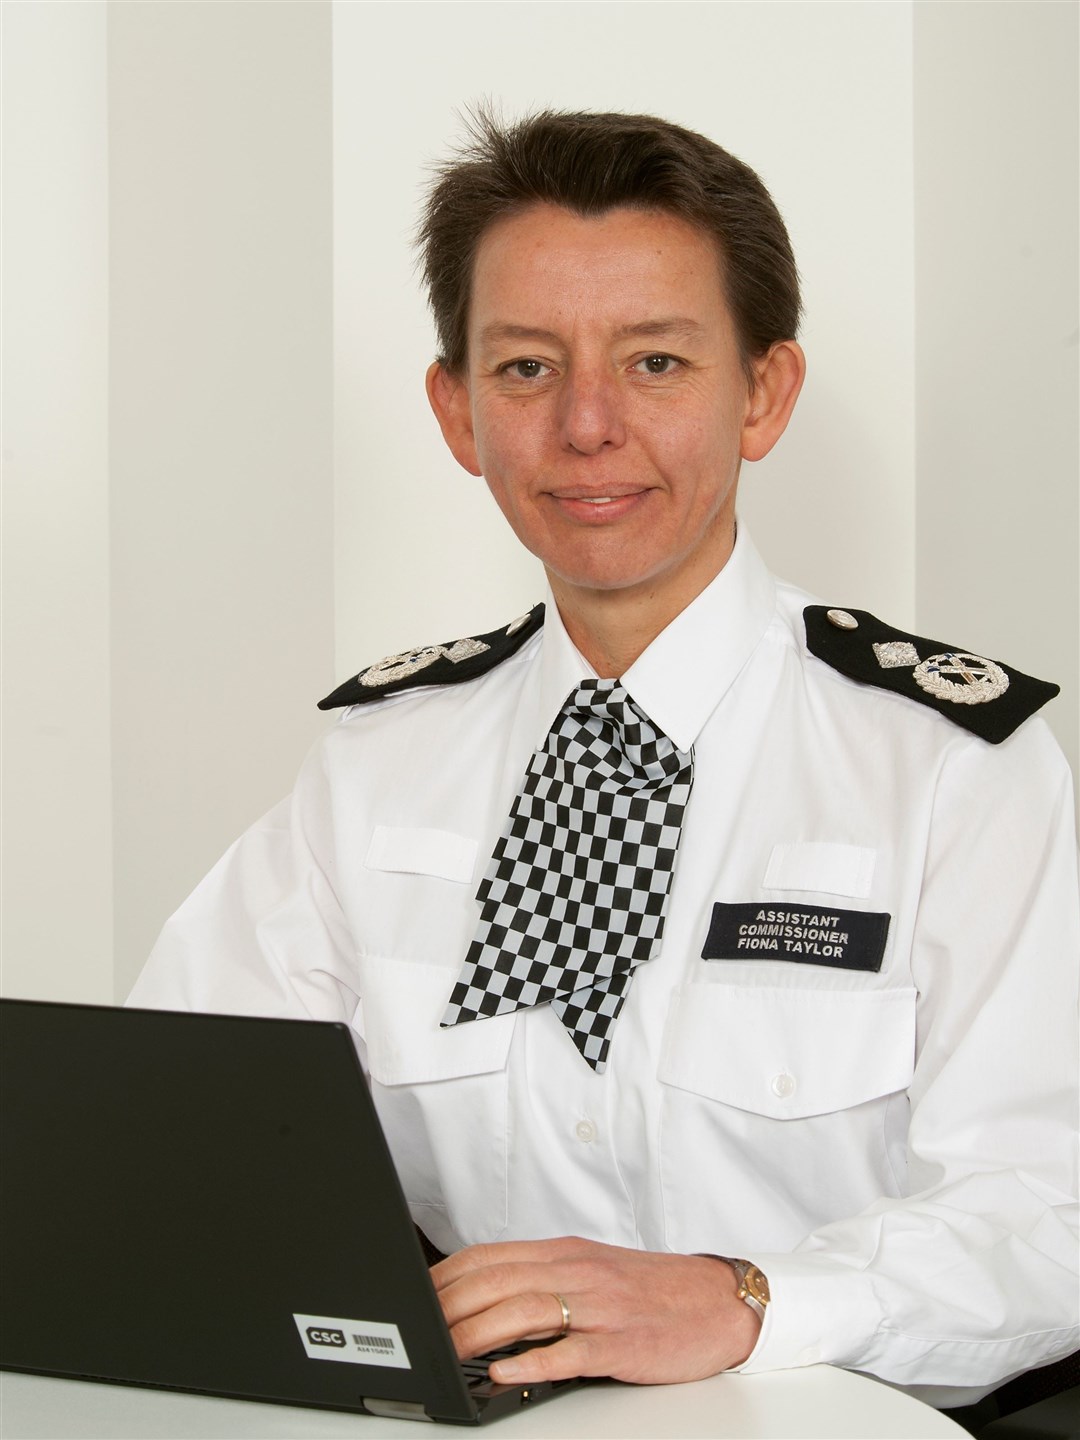 Fiona Taylor, Police Scotland's Deputy Chief Constable.